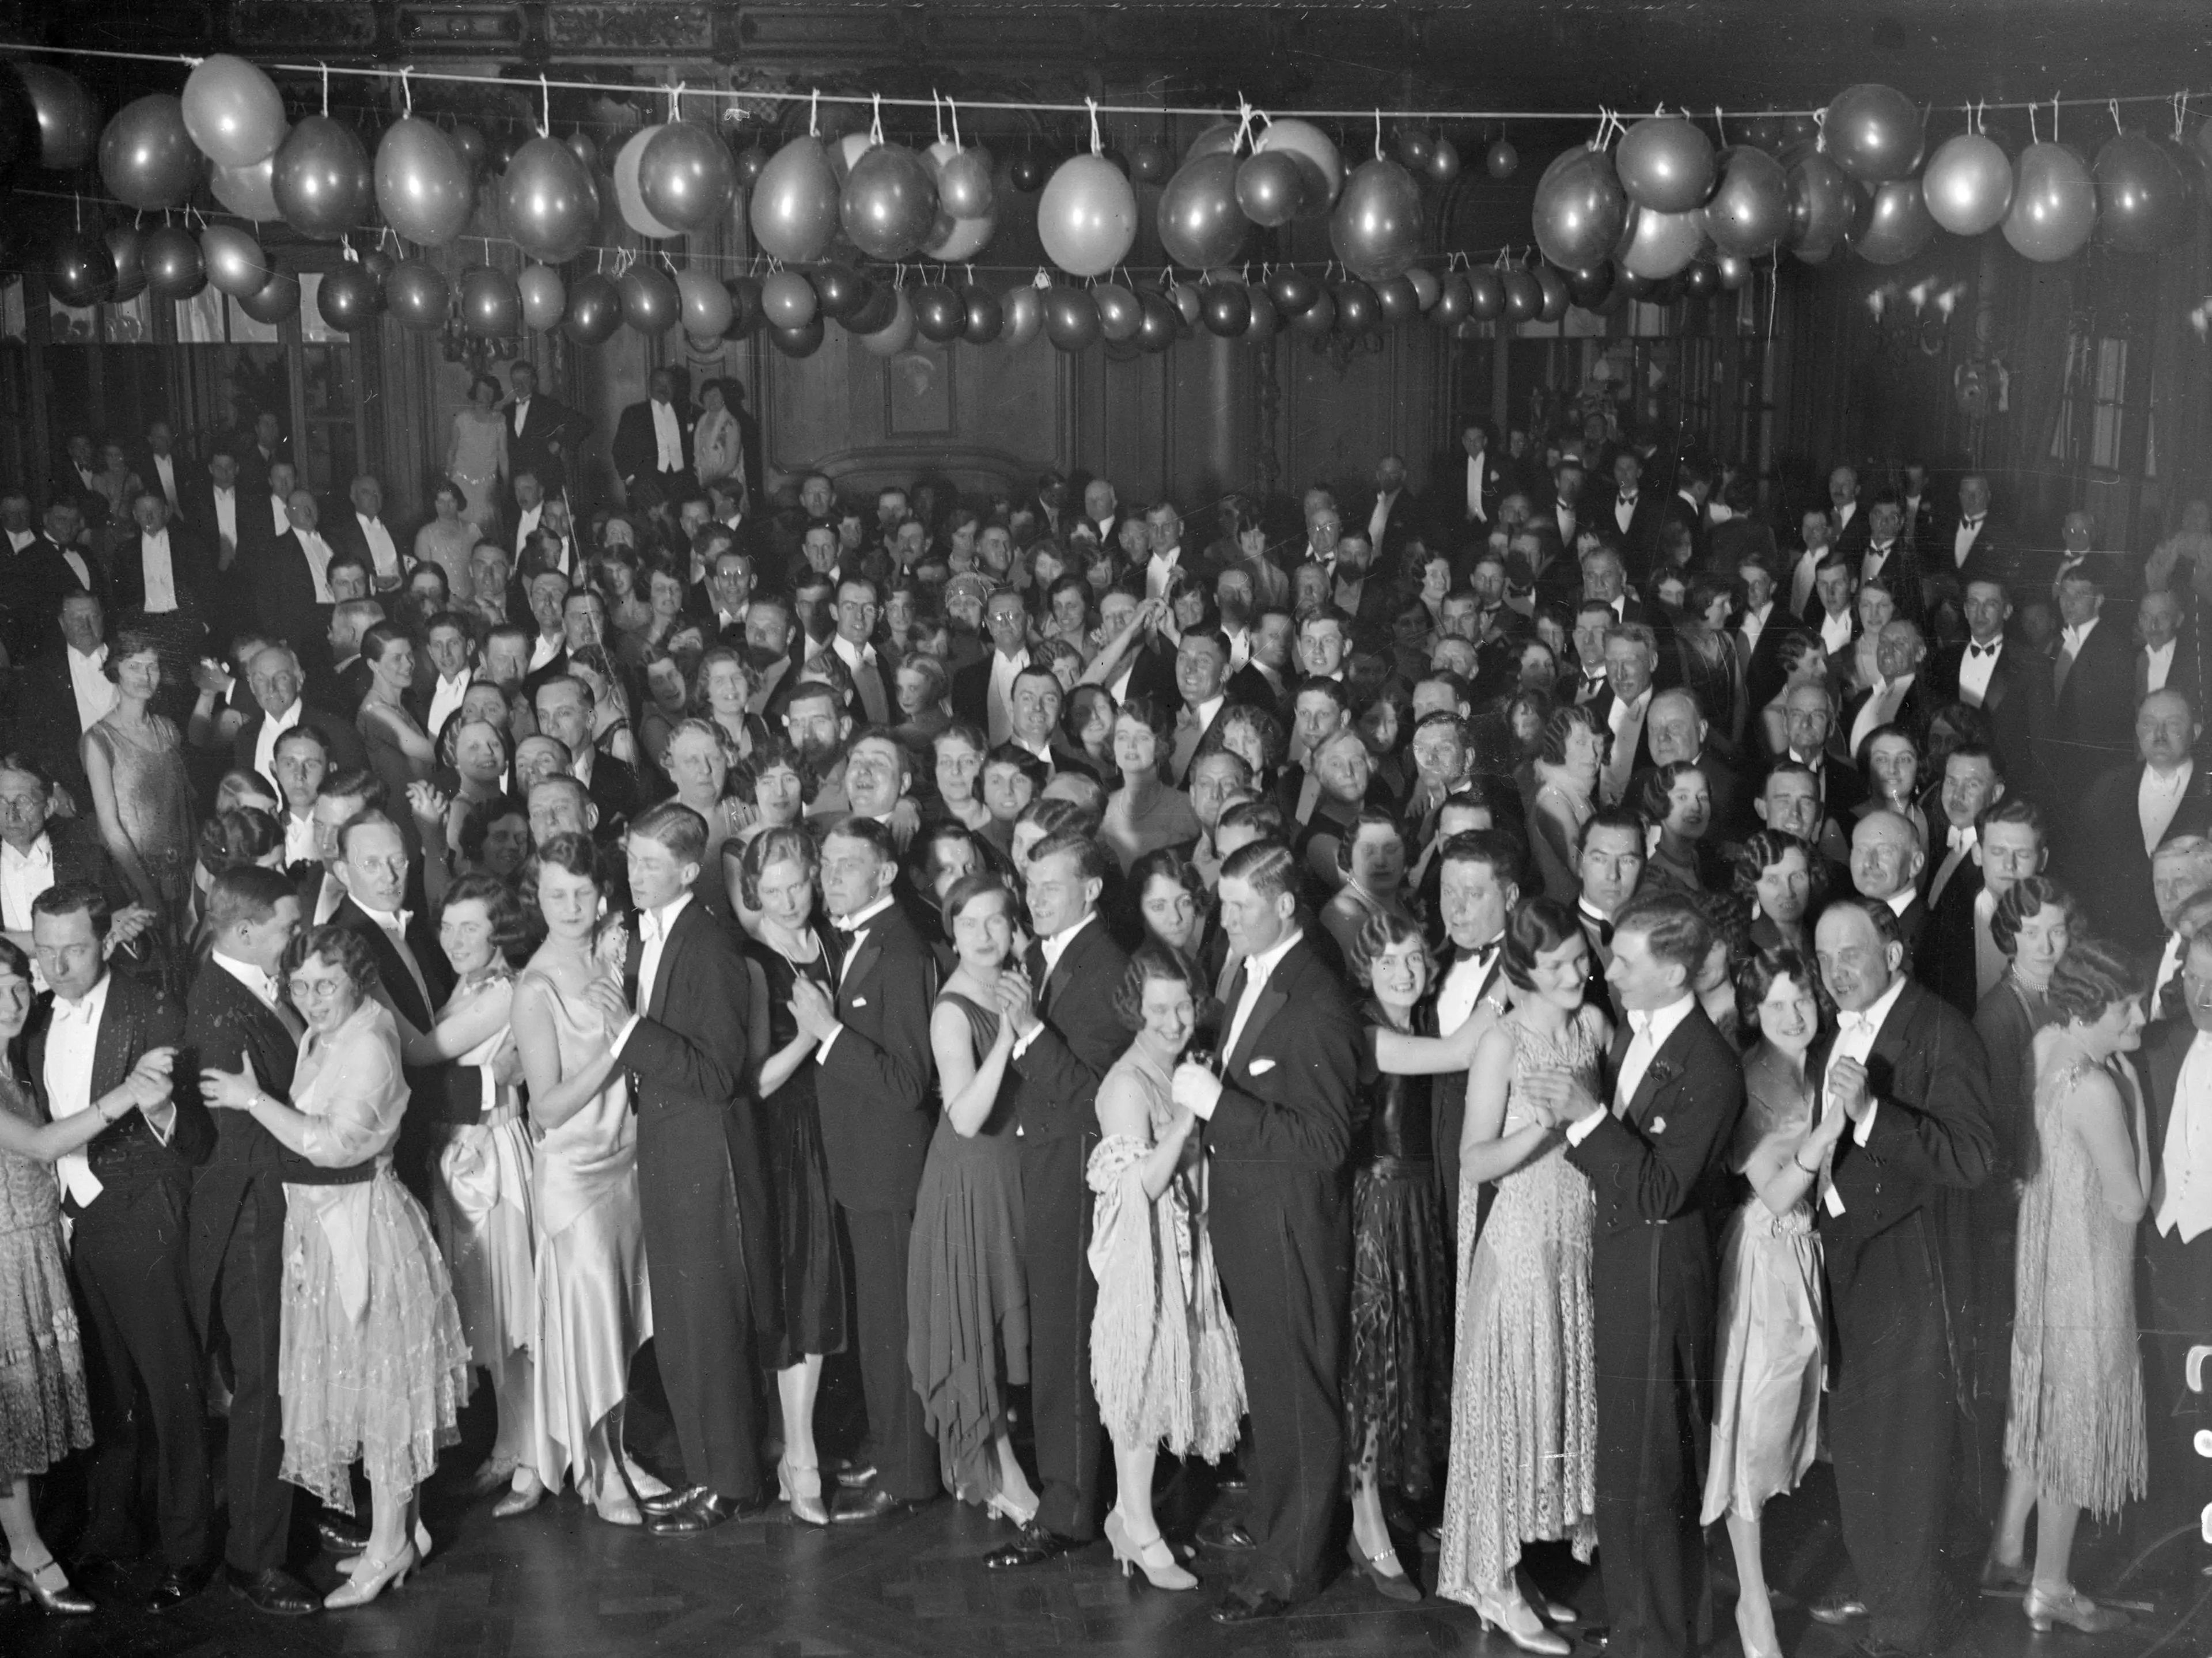 Invitados bailando en el salón de baile a bordo del transatlántico Berengaria de Cunard en los muelles de Southampton.